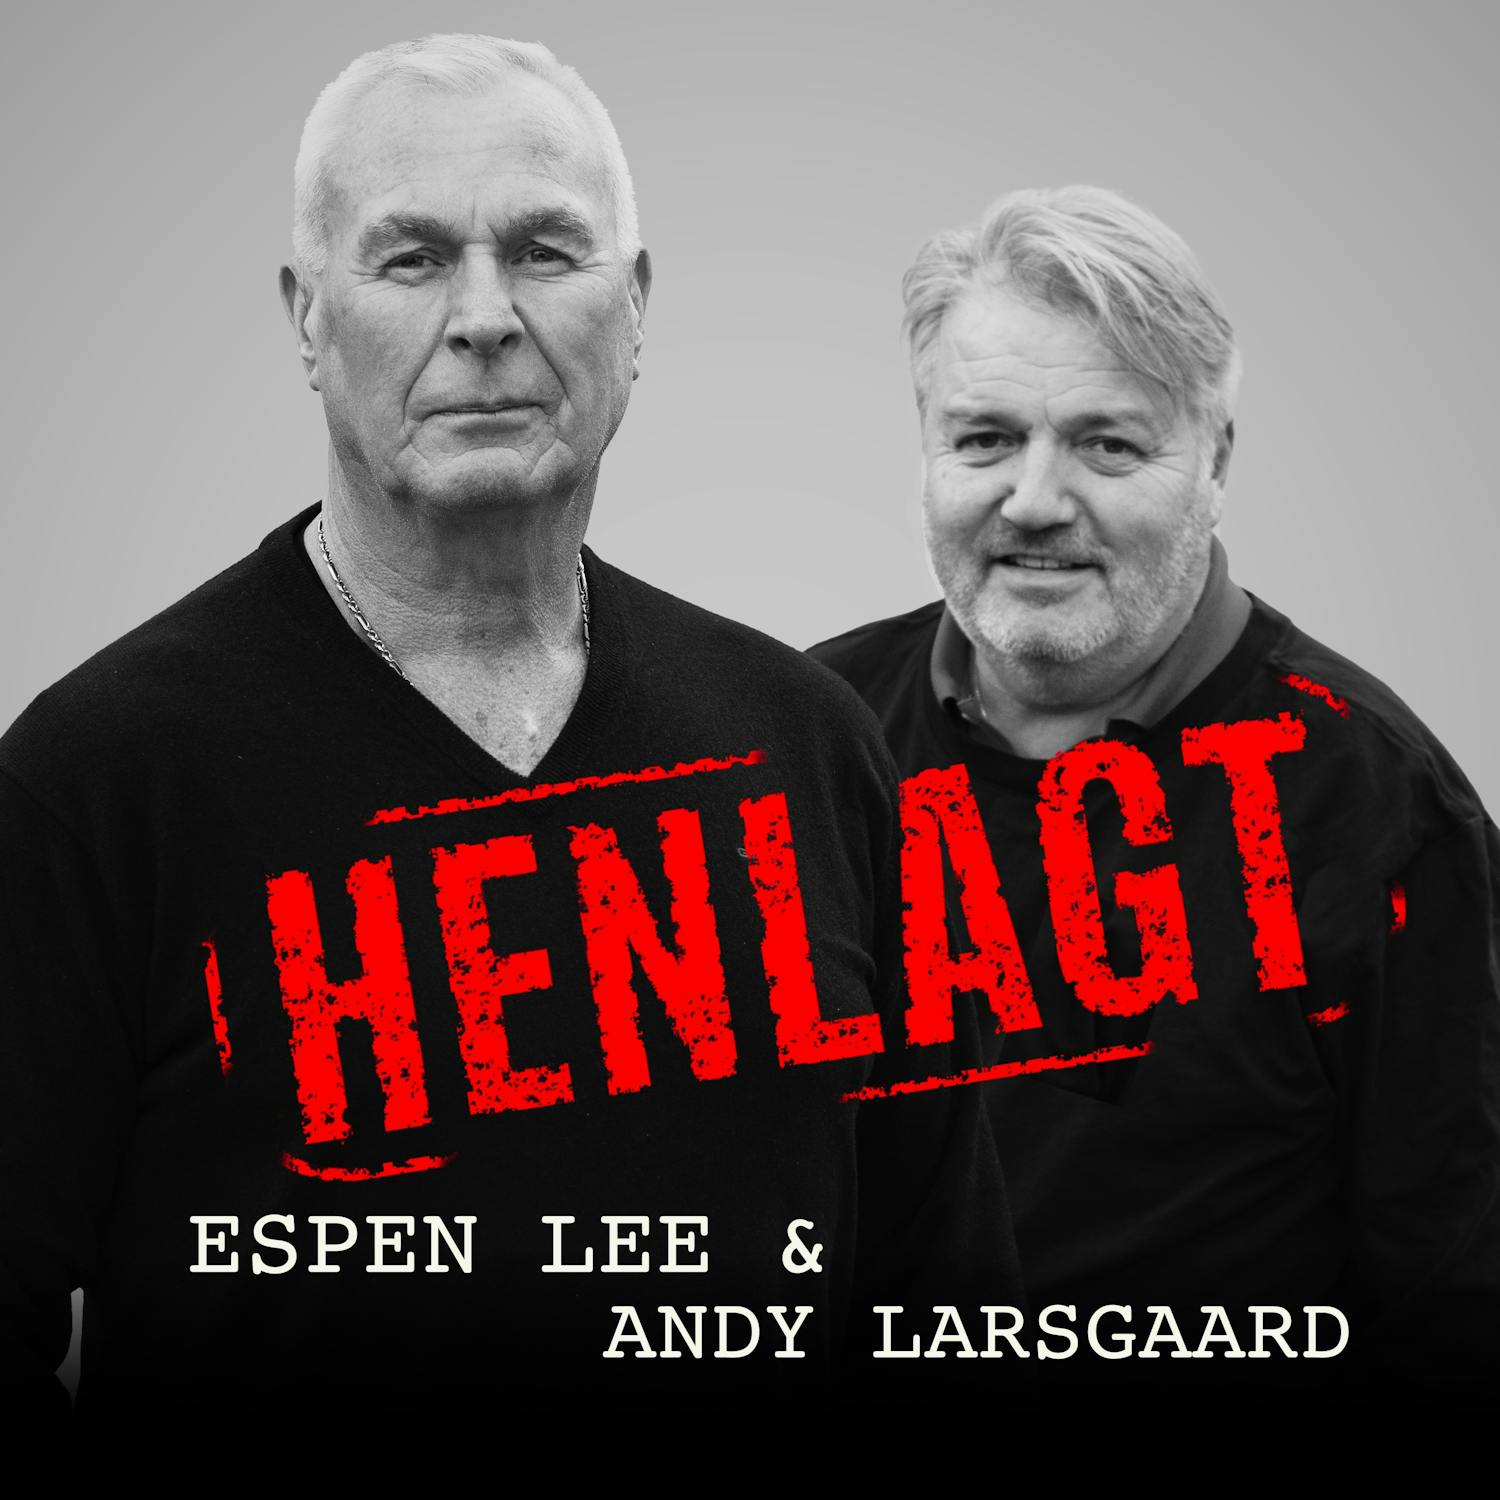 HENLAGT - Espen Lee & Andy Larsgaard